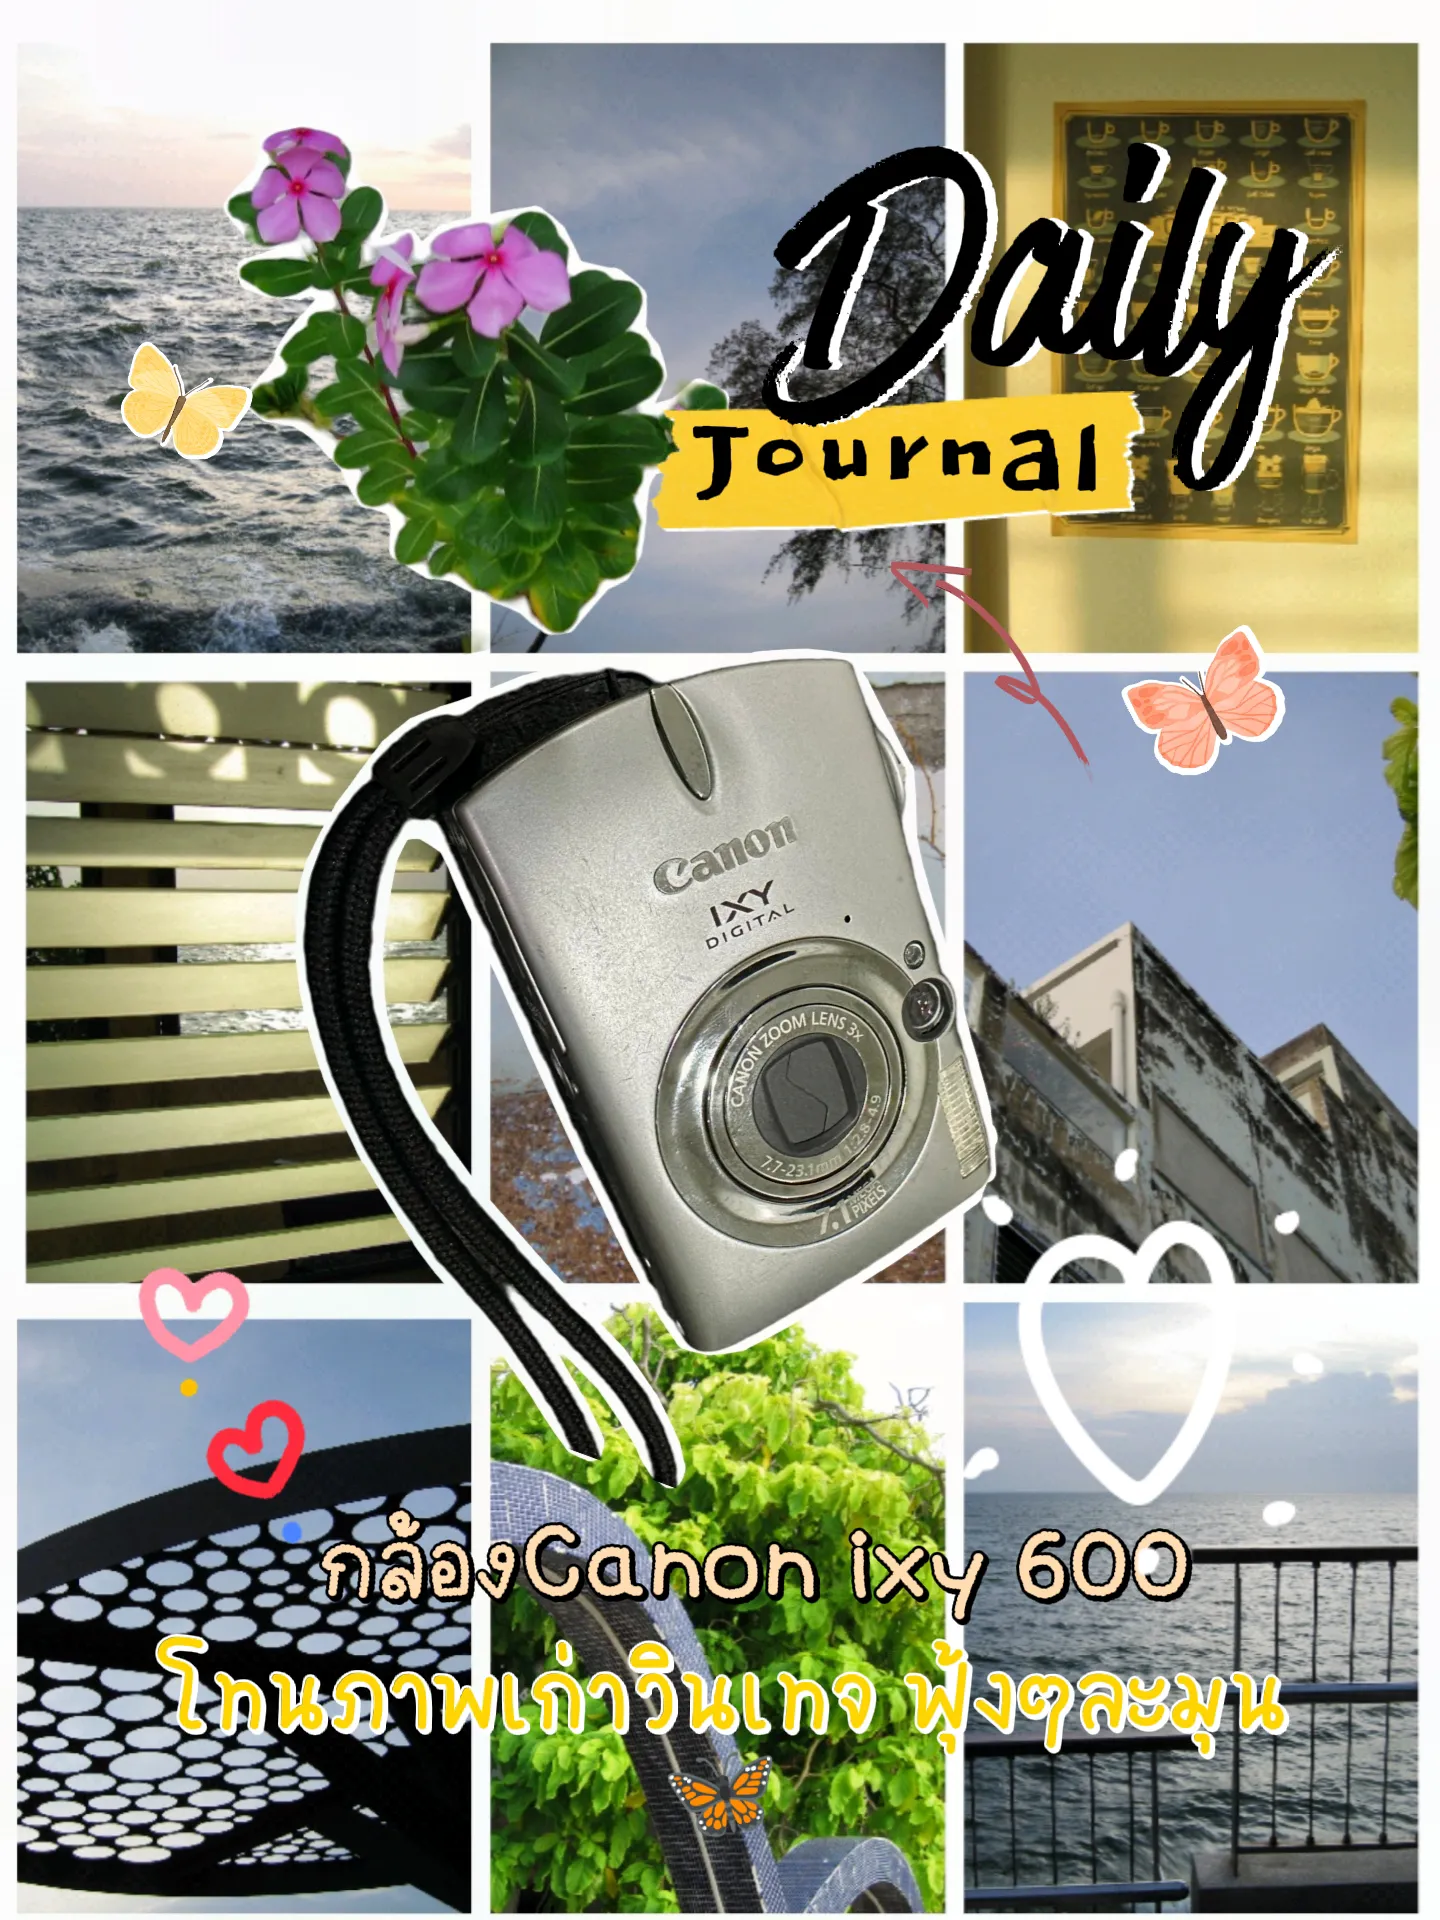 กล้องCanon ixy 600 | Gallery posted by Fon Wichitra | Lemon8